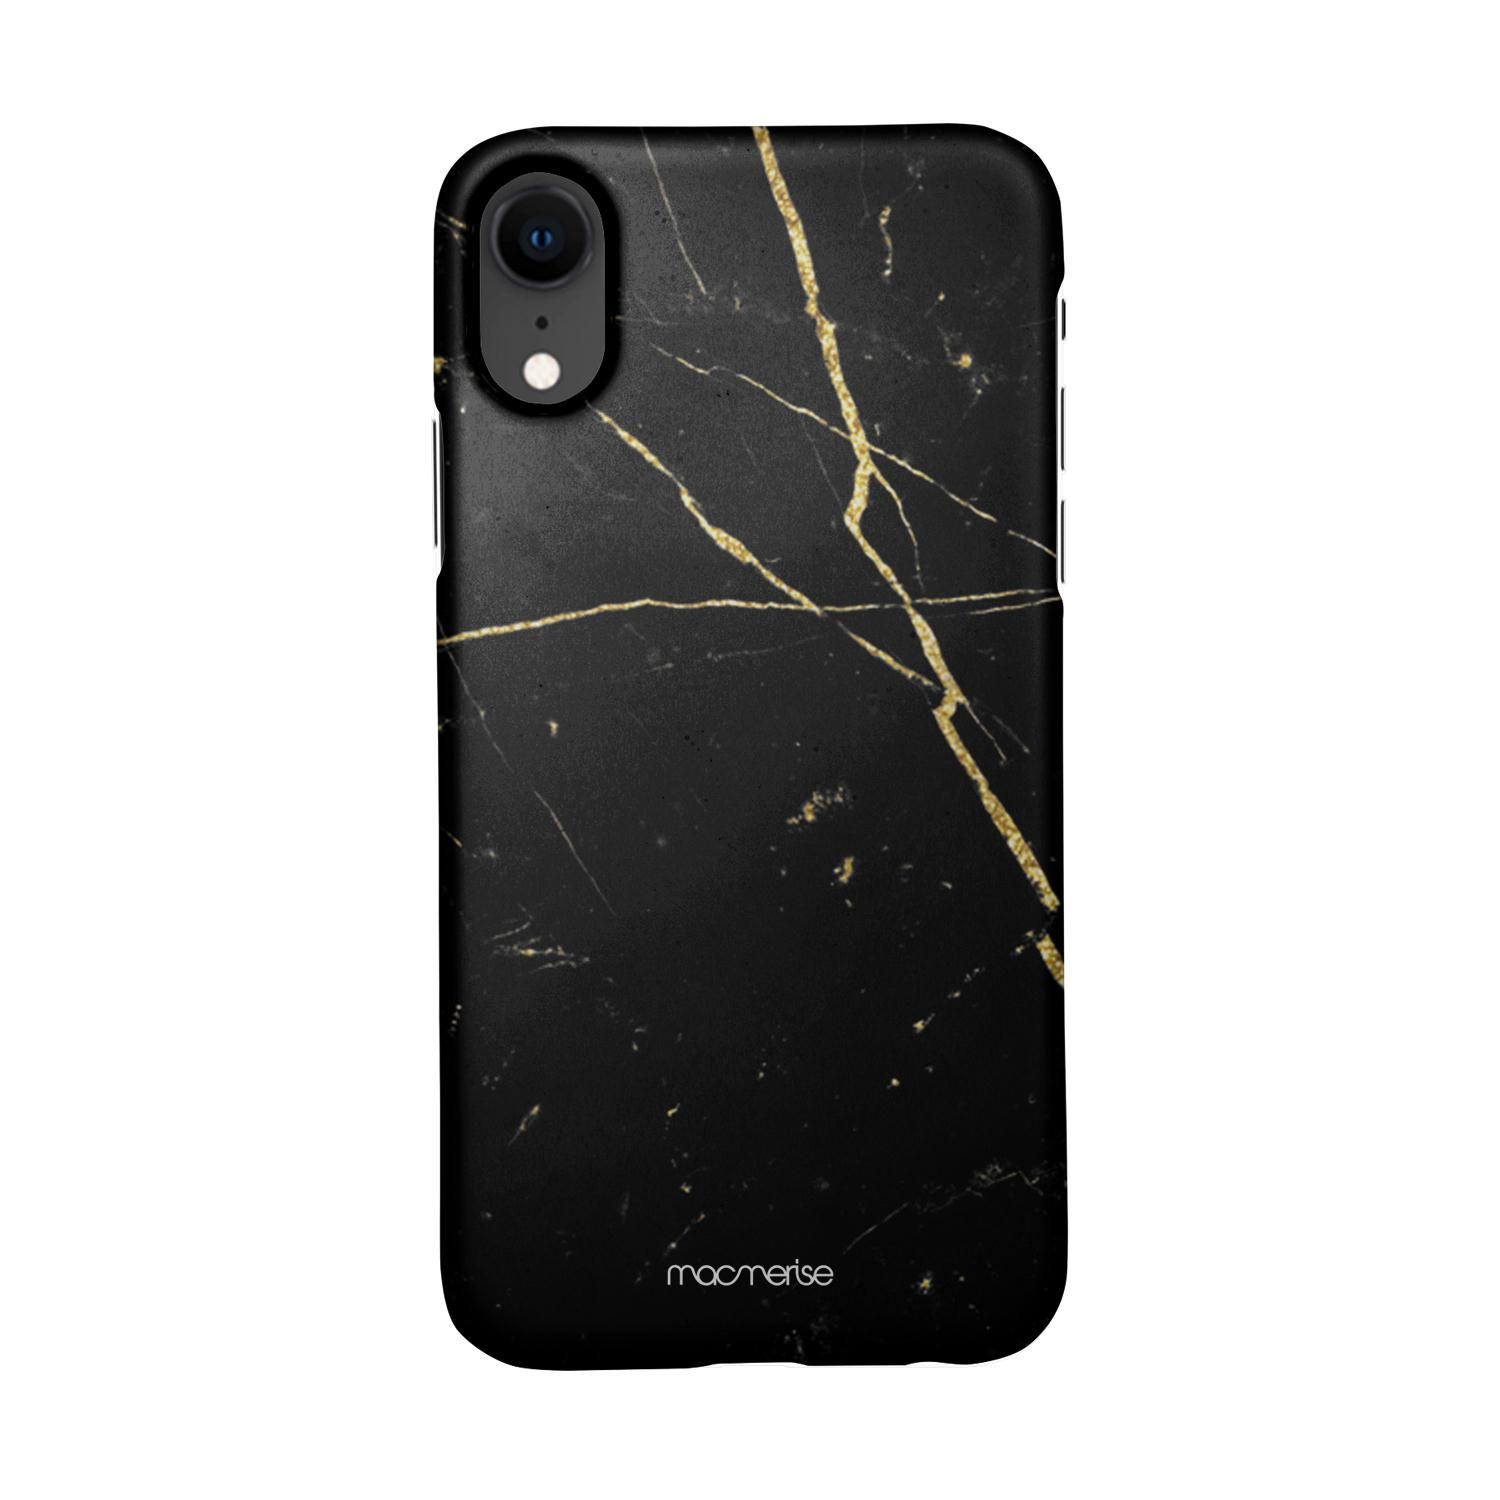 Buy Marble Black Onyx - Sleek Phone Case for iPhone XR Online